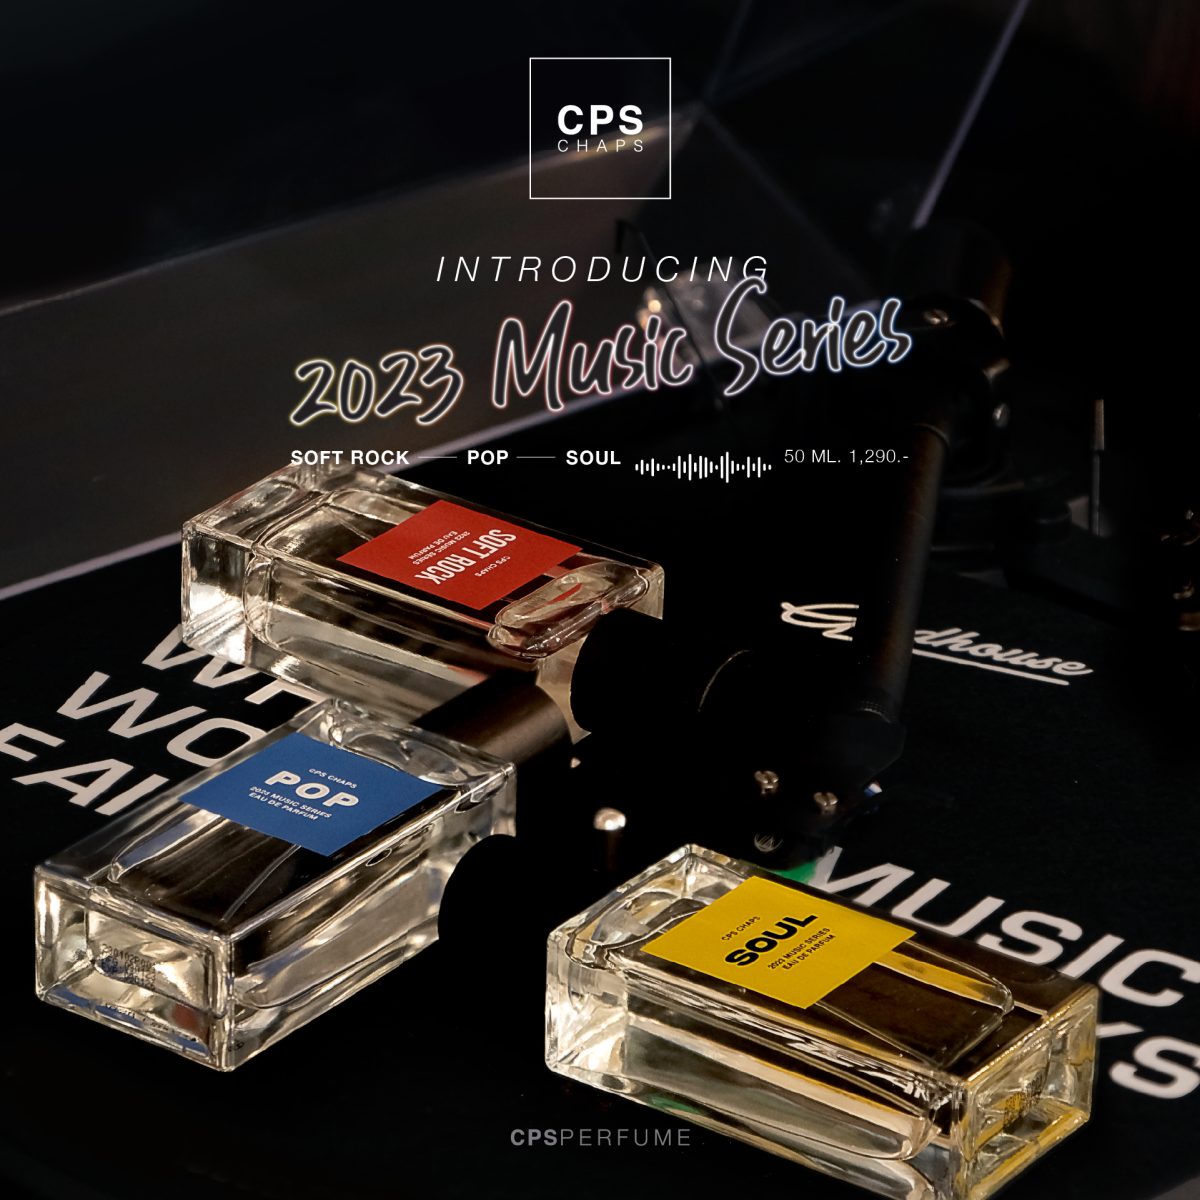 CPS CHAPS เปิดตัวน้ำหอมใหม่ล่าสุด 2023 MUSIC SERIES แรงบันดาลใจจากจังหวะดนตรี สู่กลิ่นหอมอันเป็นเอกลักษณ์